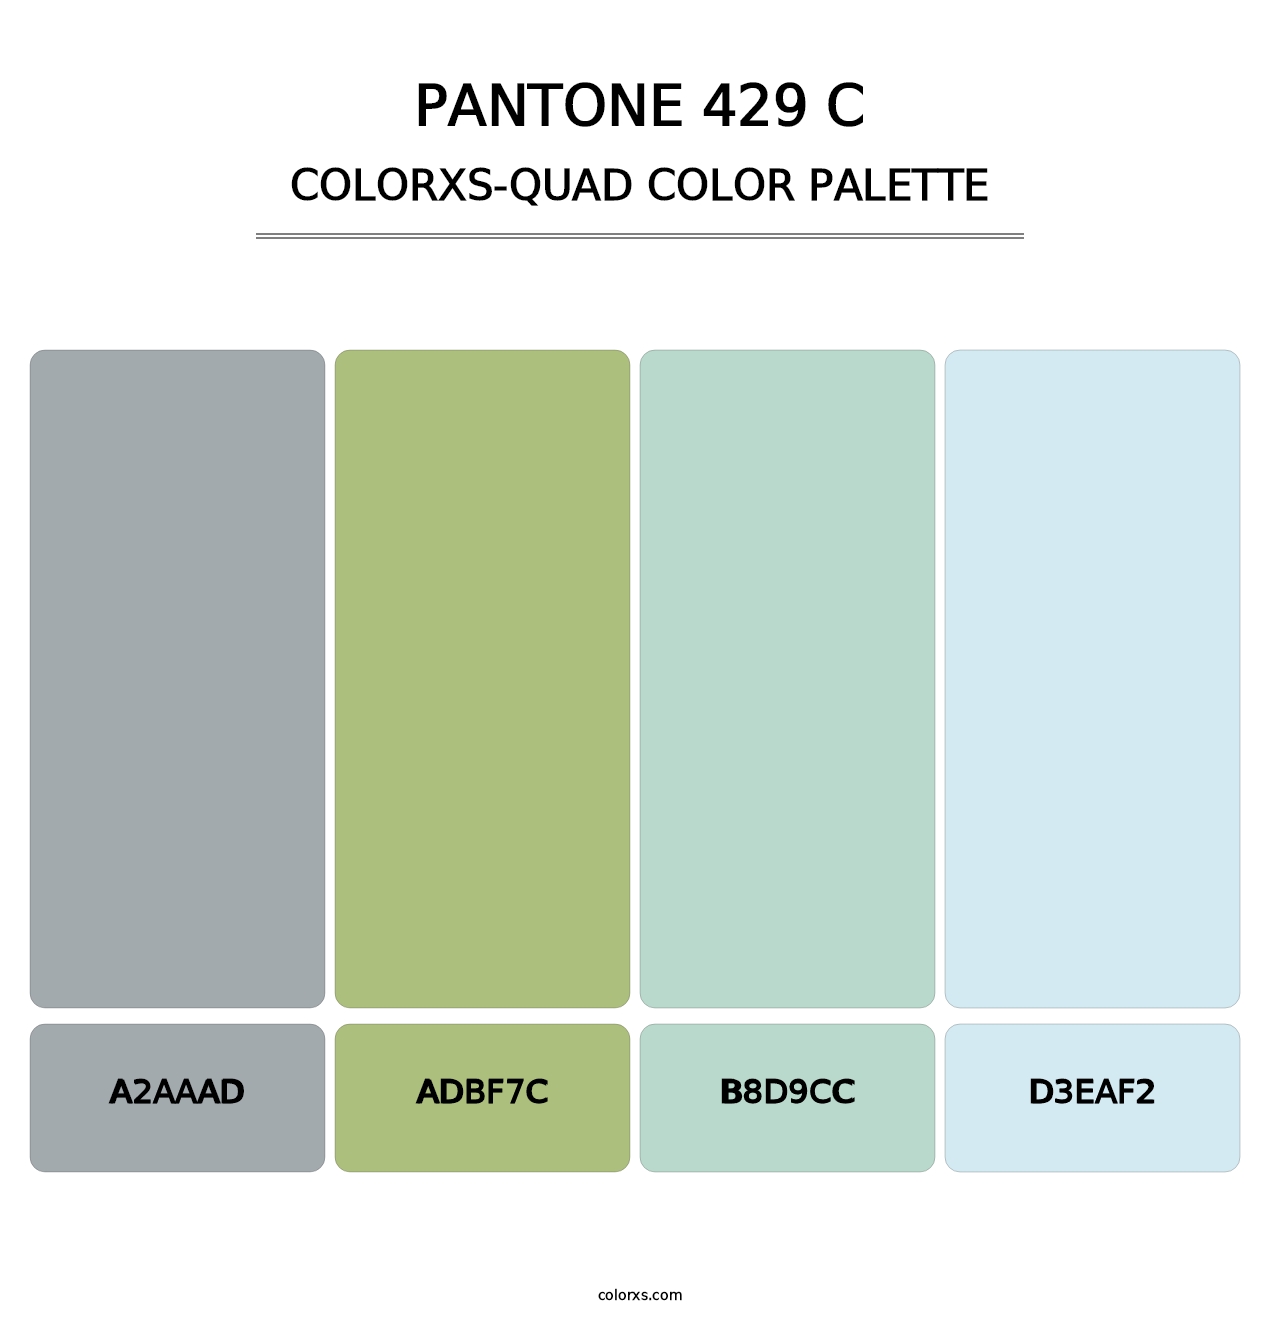 PANTONE 429 C - Colorxs Quad Palette